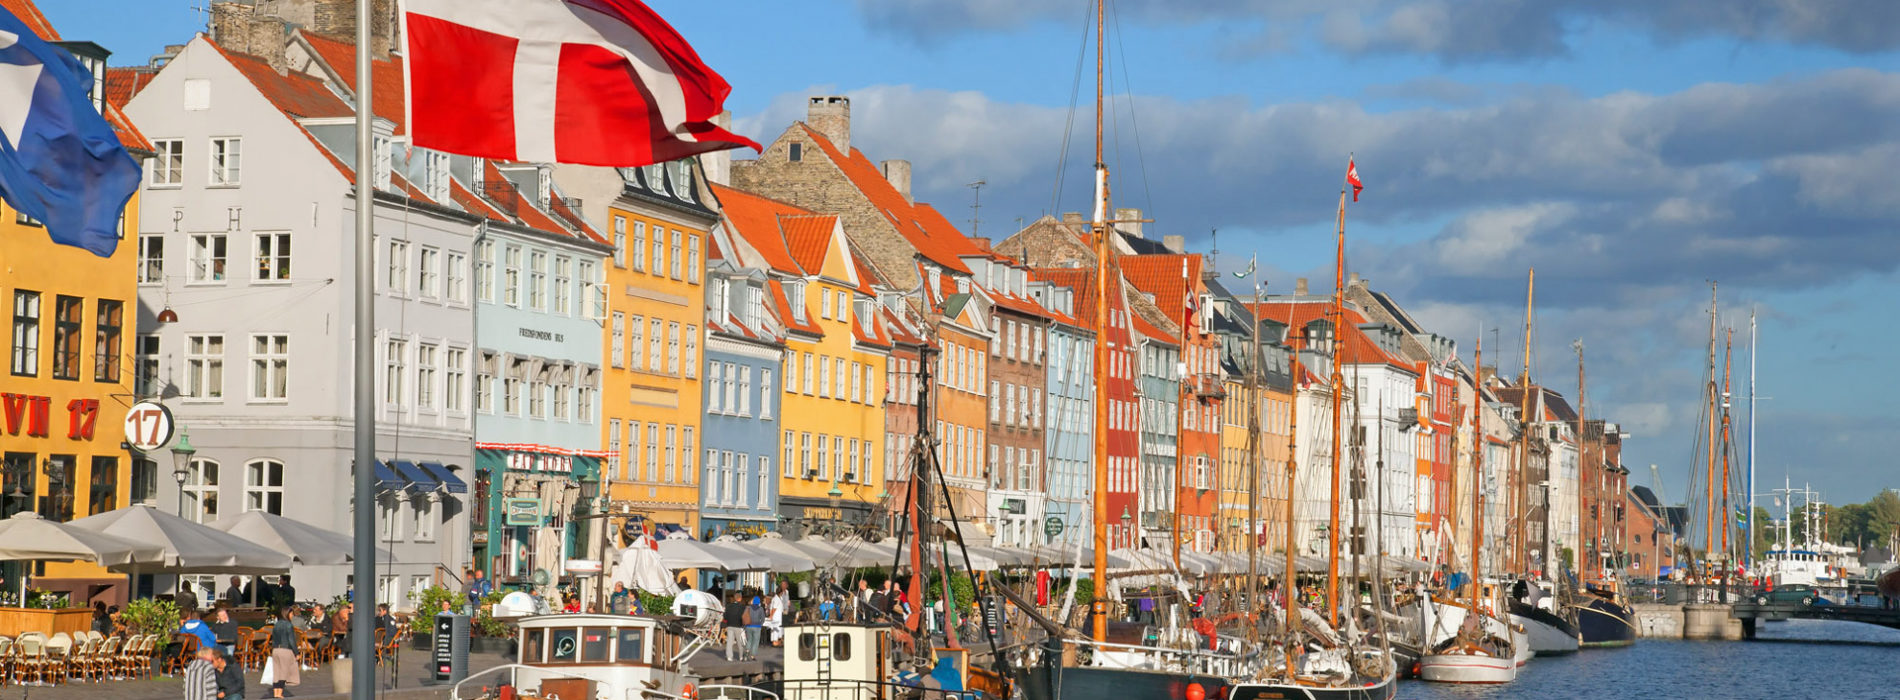 Korona duńska – historia oraz ciekawostki na temat waluty w Danii